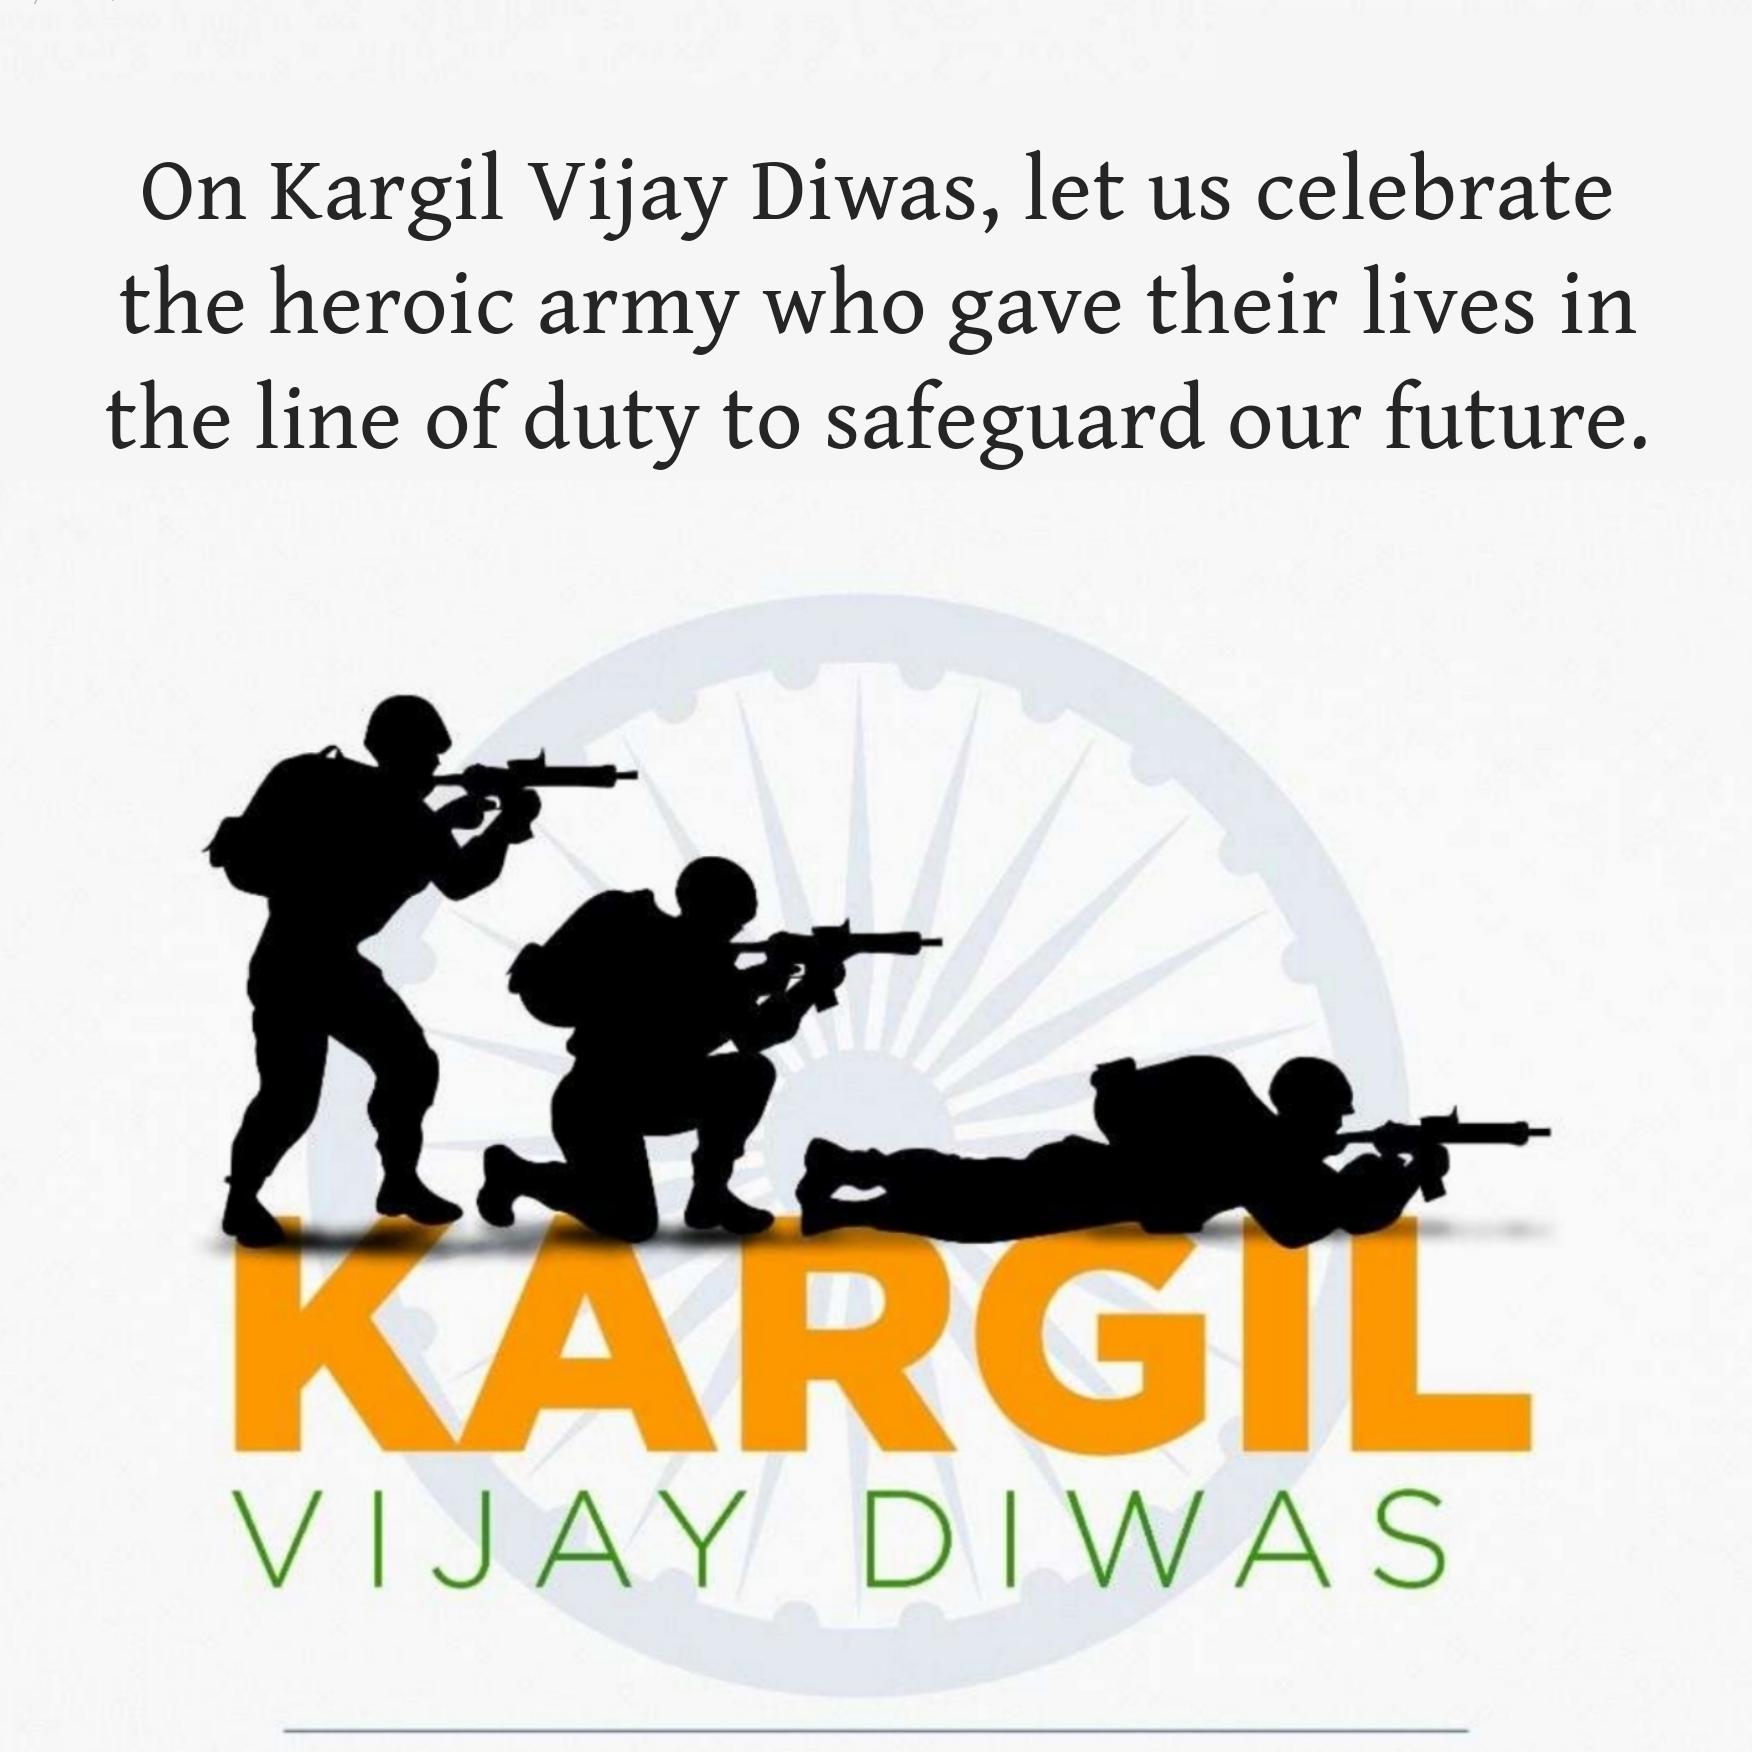 On Kargil Vijay Diwas let us celebrate the heroic army